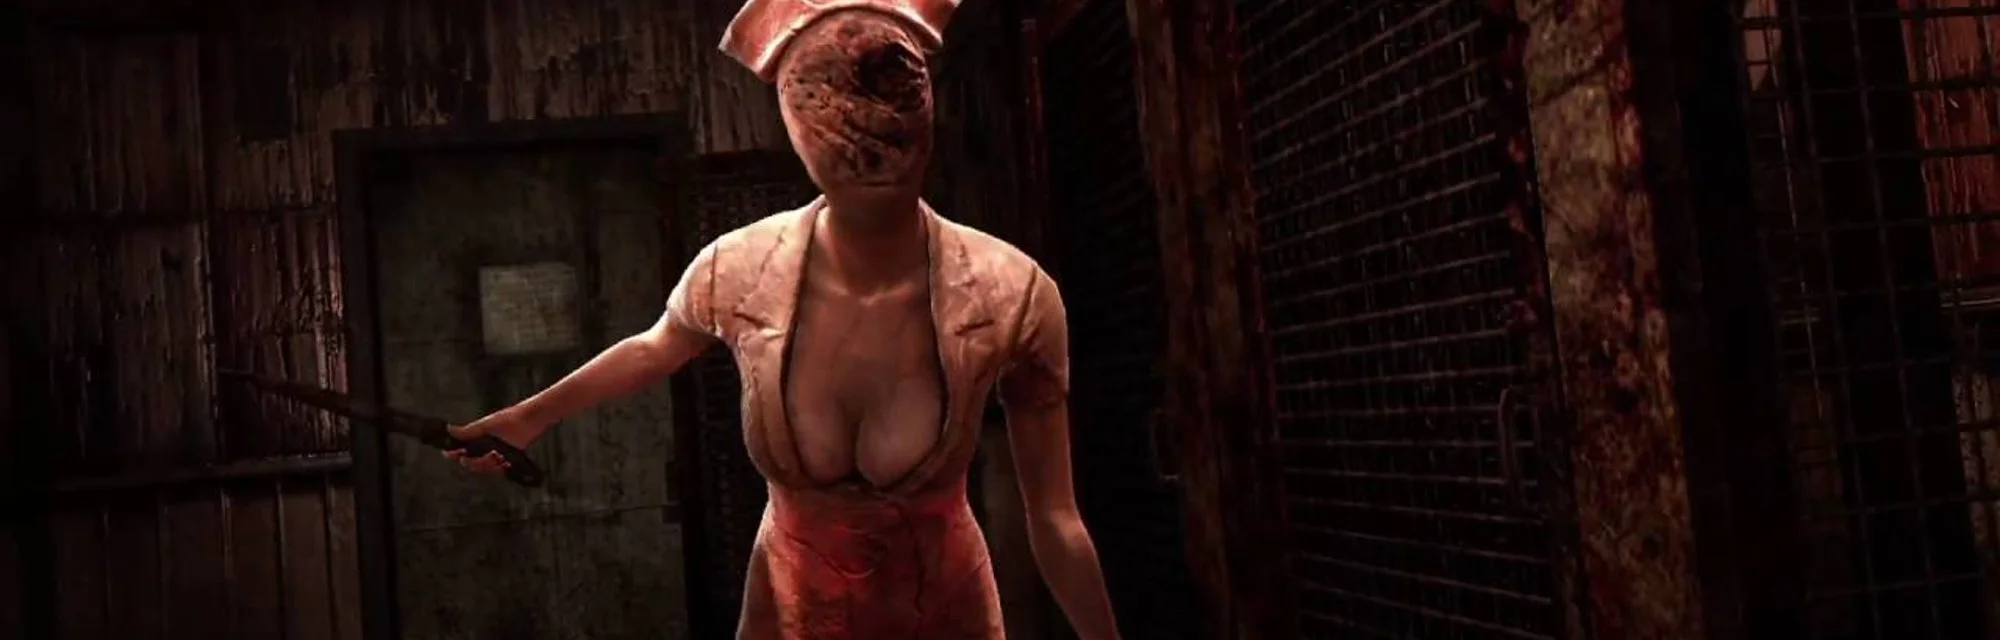 Аккаунт Silent Hill в Твиттере получил верификацию - изображение обложка